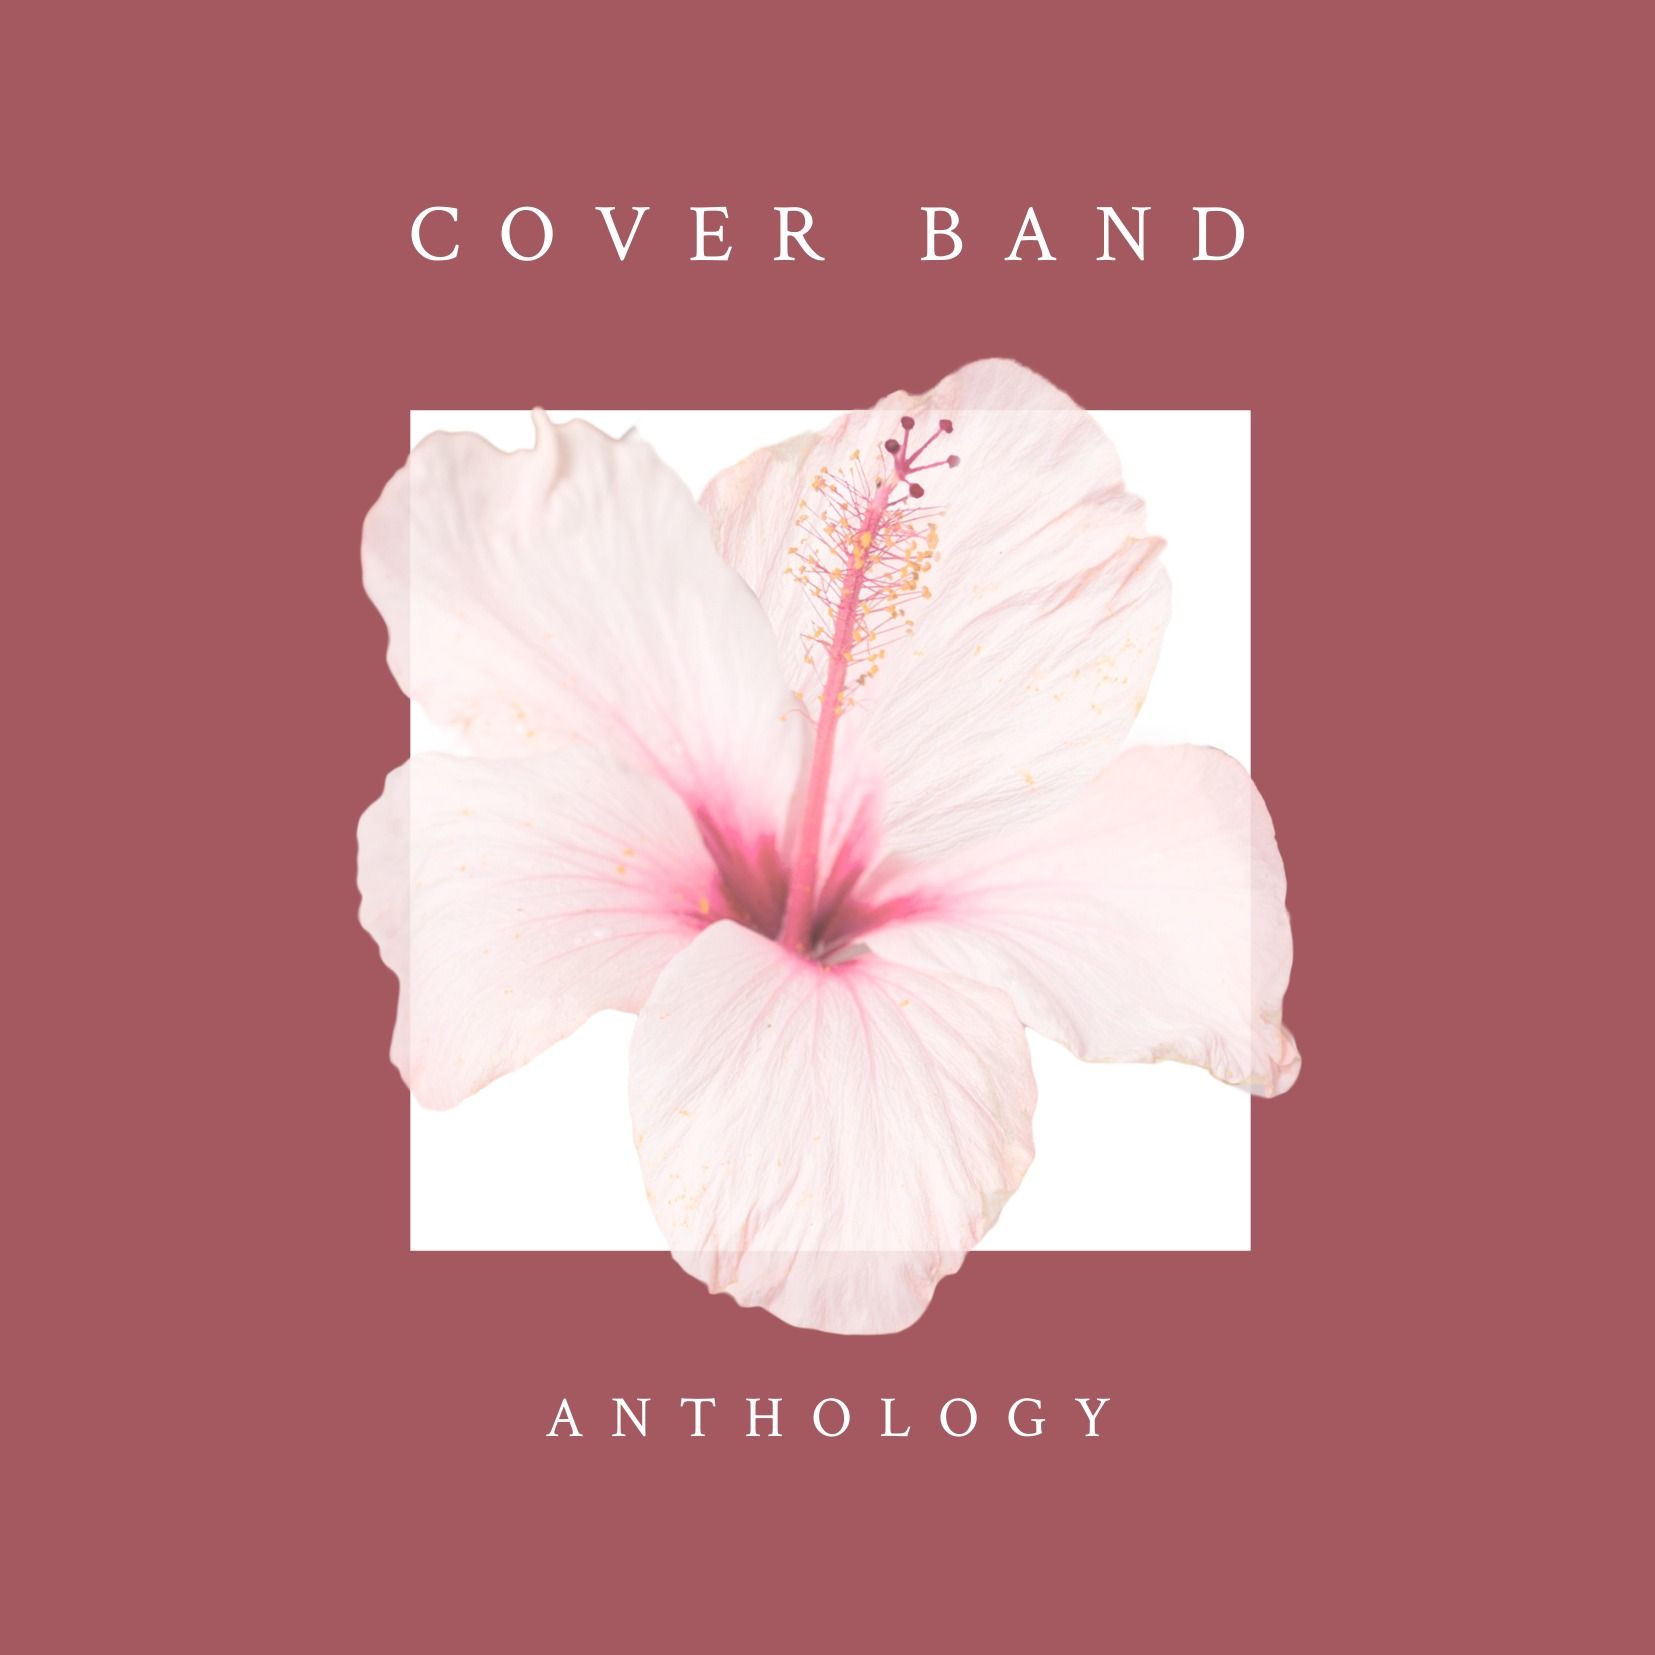 Albumcover-Design mit Blume auf rotem Hintergrund - Albumcover-Design mit Blumenmuster - Bild